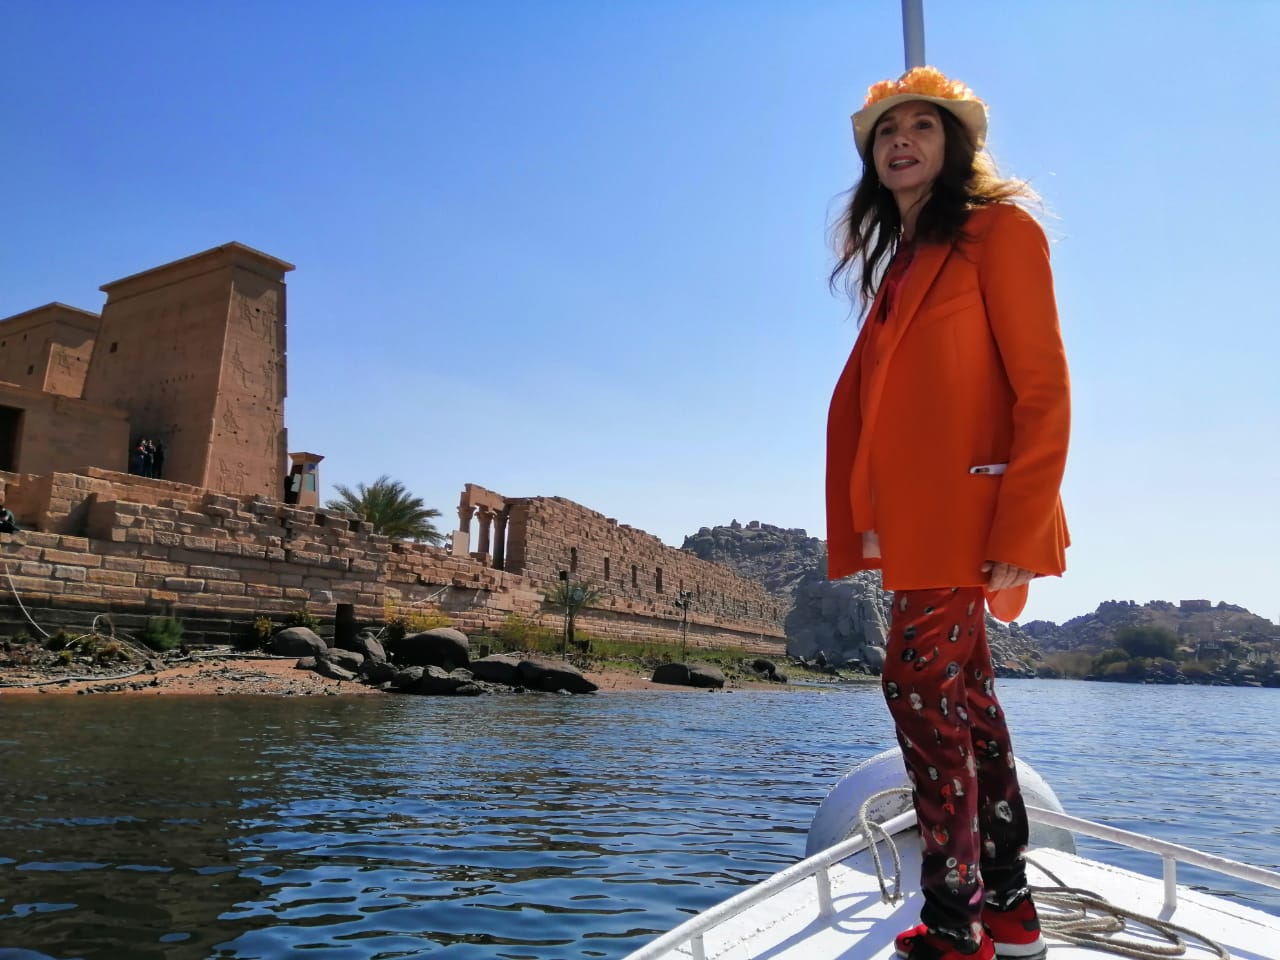 النجمة العالمية فيكتوريا أبرِل في زيارة لمحافظةأسوان بمصر